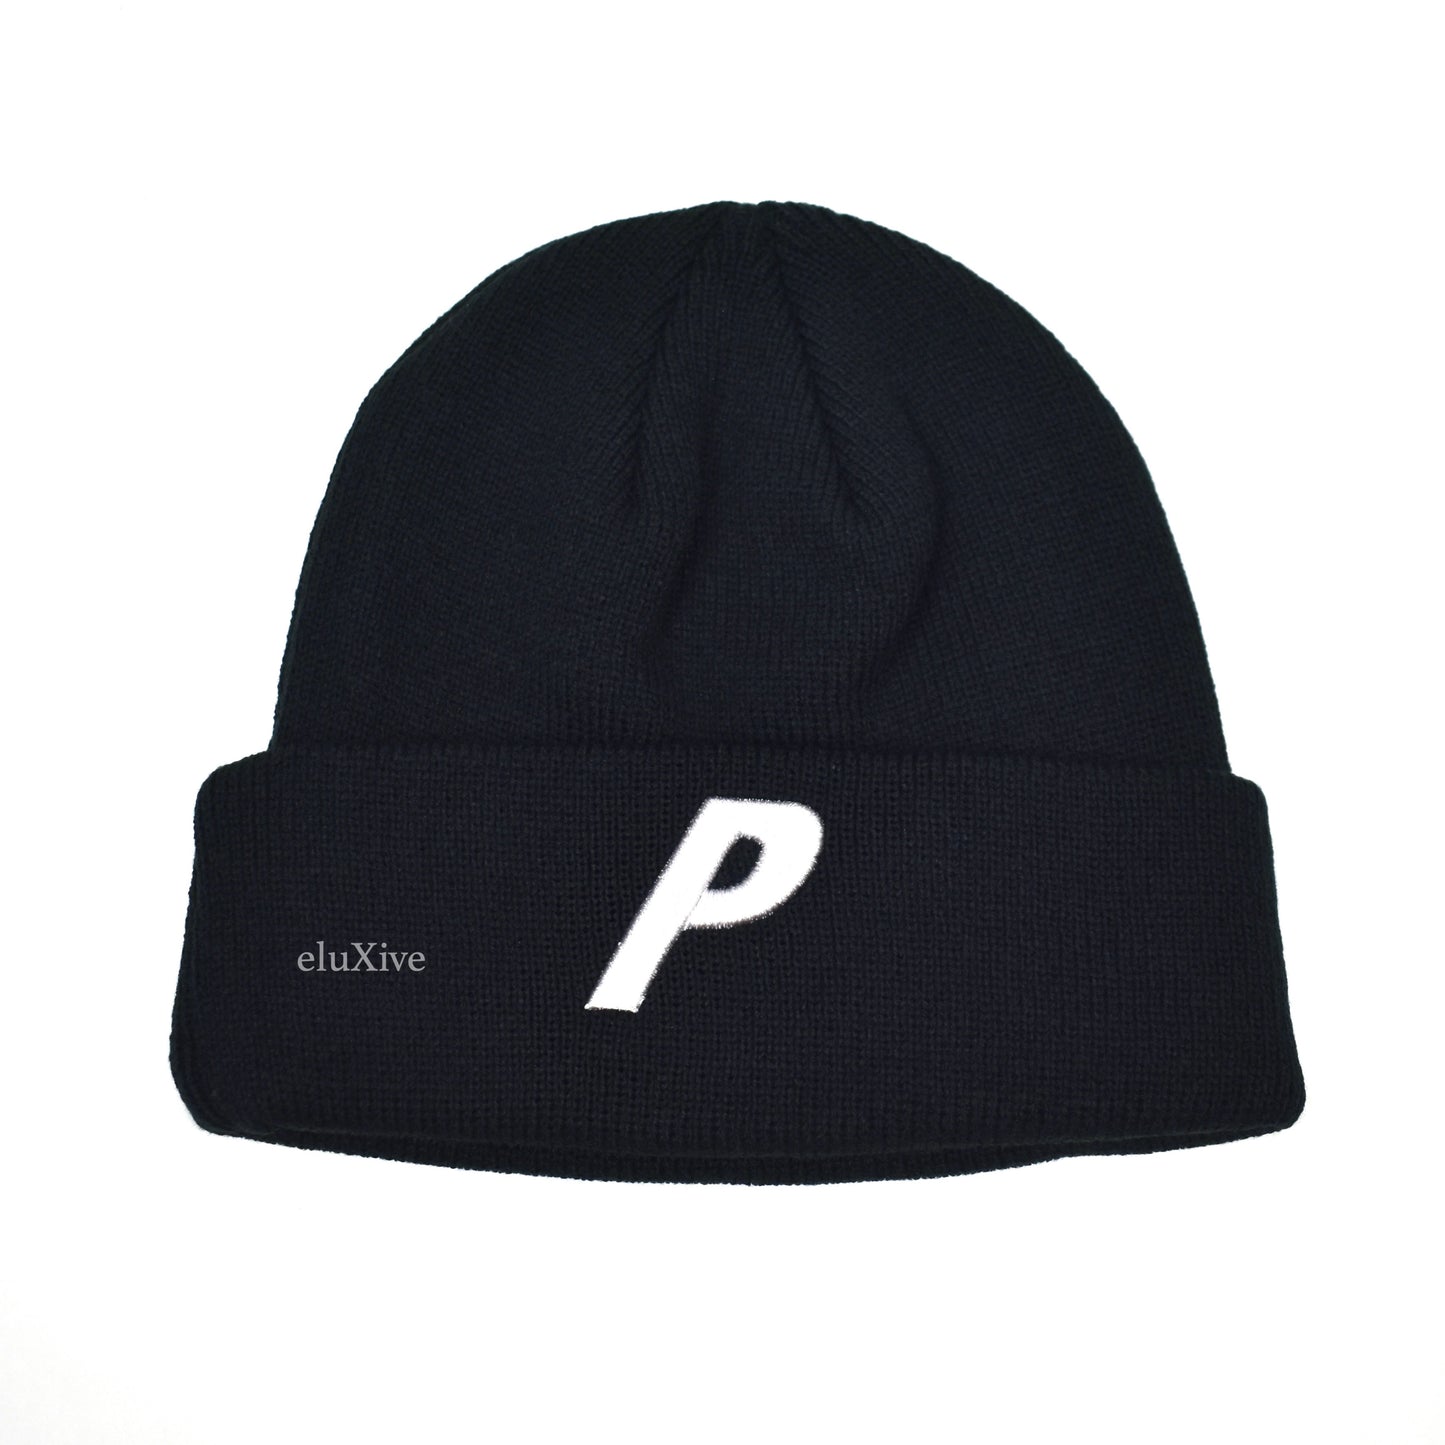 Palace - 3D P-Logo Beanie (Black)